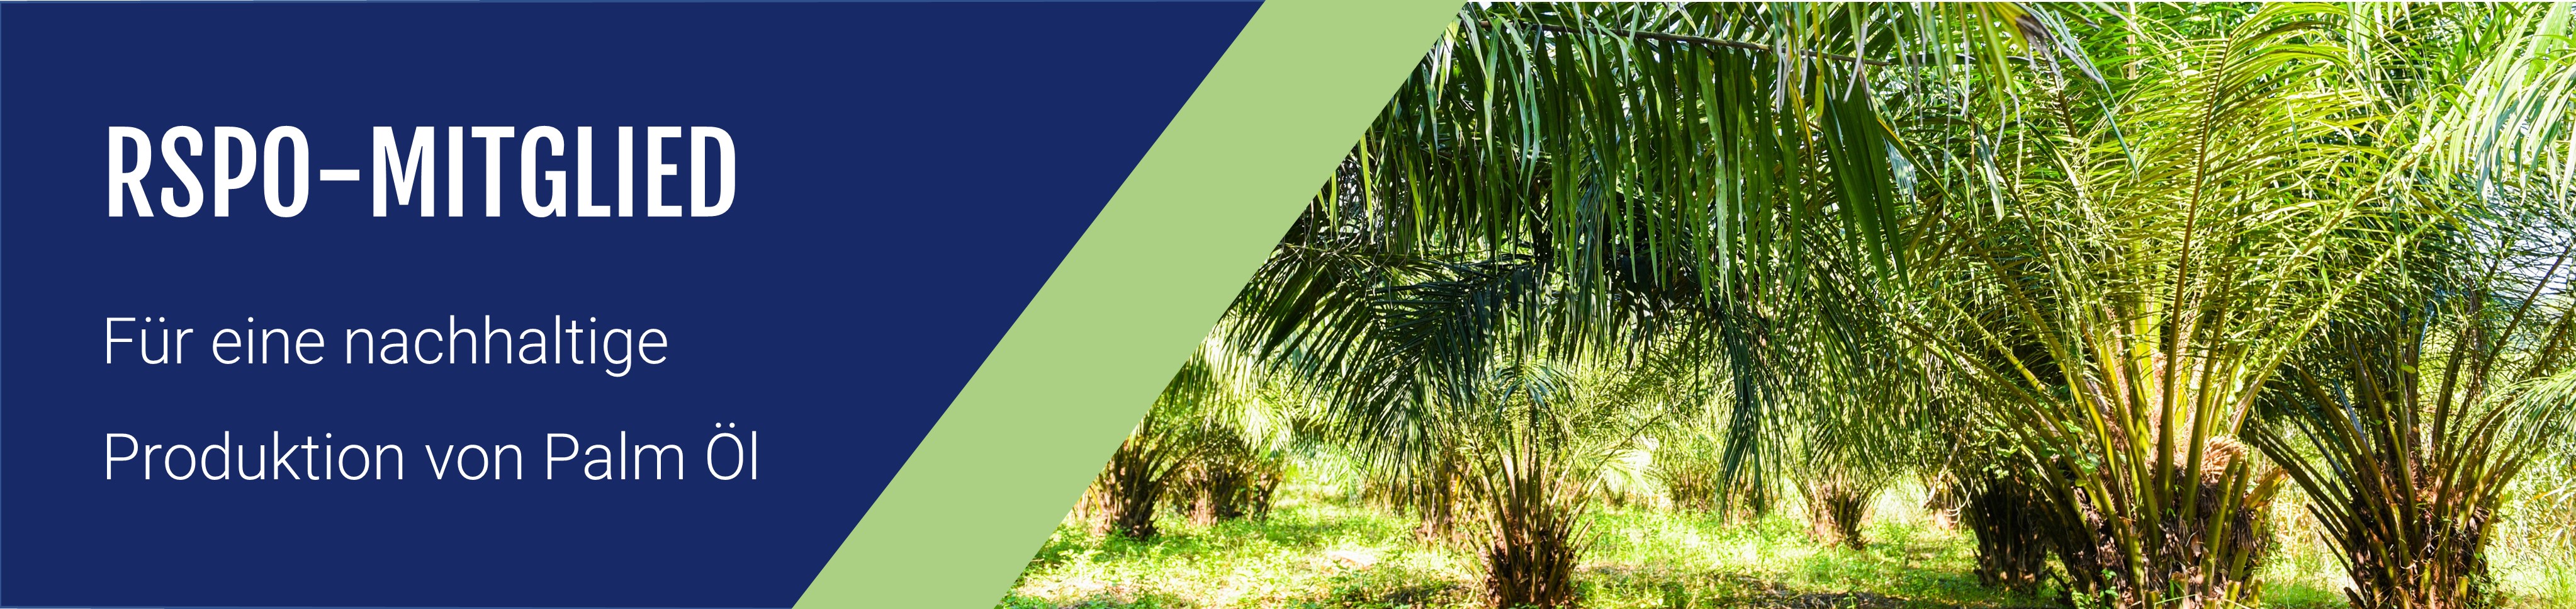 LEVACO neues Mitglied des RSPO für die Verwendung von nachhaltigem Palmöl.